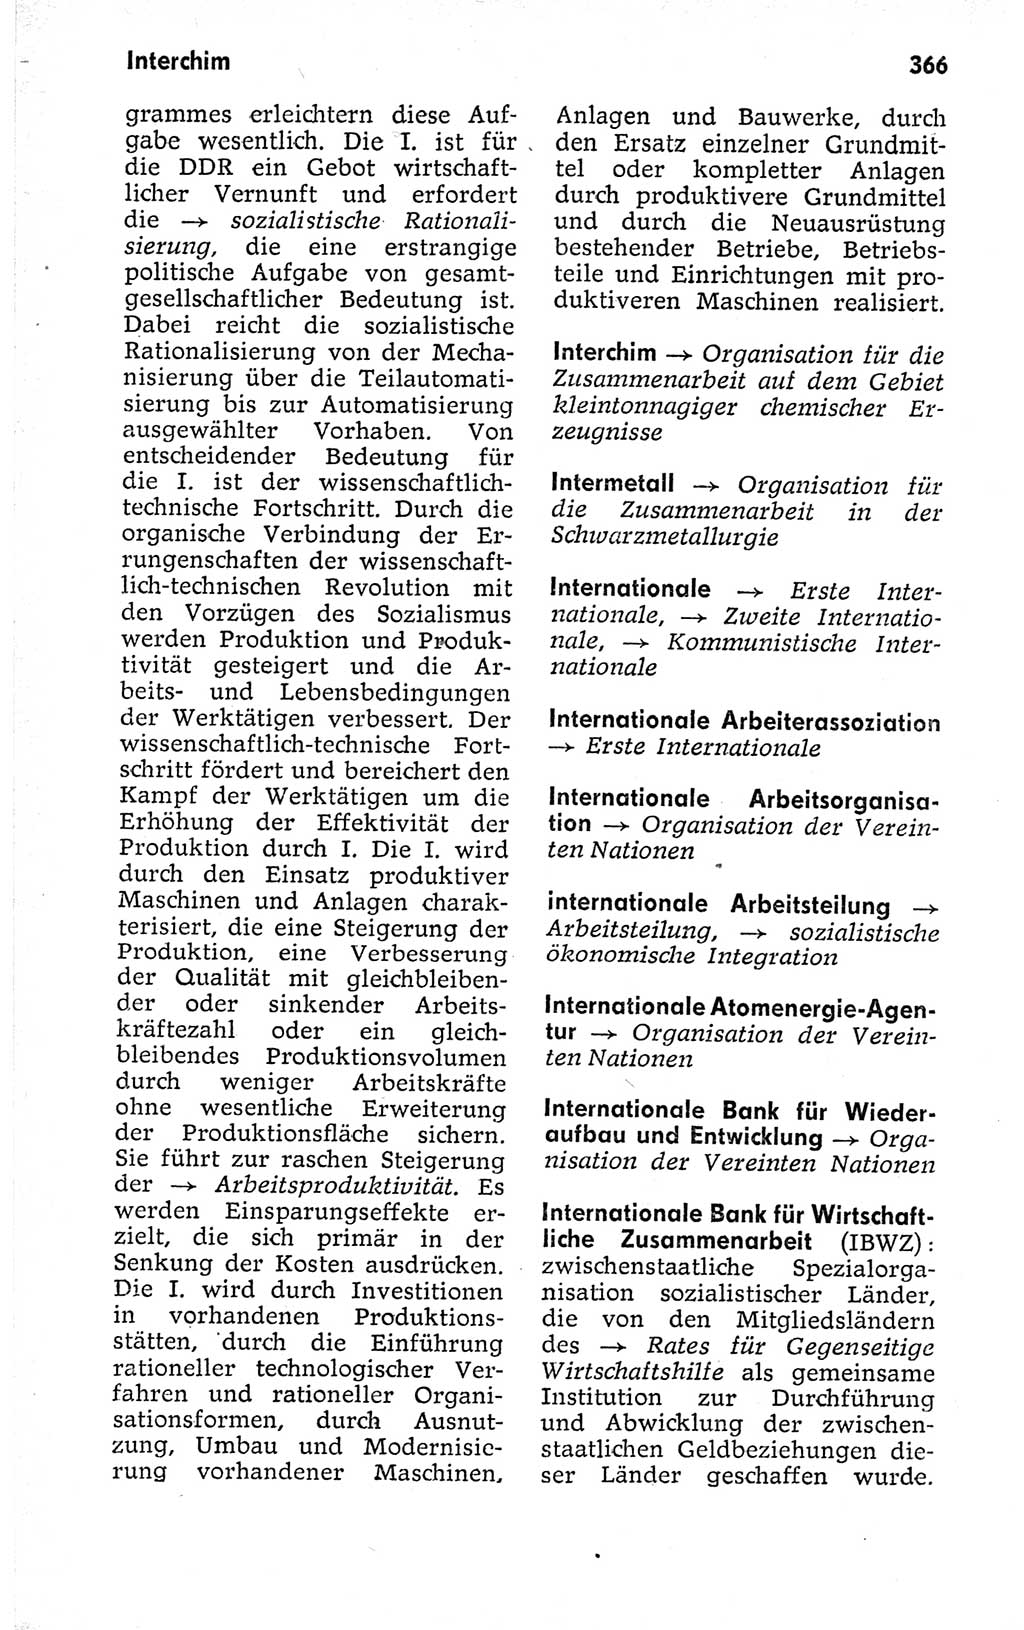 Kleines politisches Wörterbuch [Deutsche Demokratische Republik (DDR)] 1973, Seite 366 (Kl. pol. Wb. DDR 1973, S. 366)